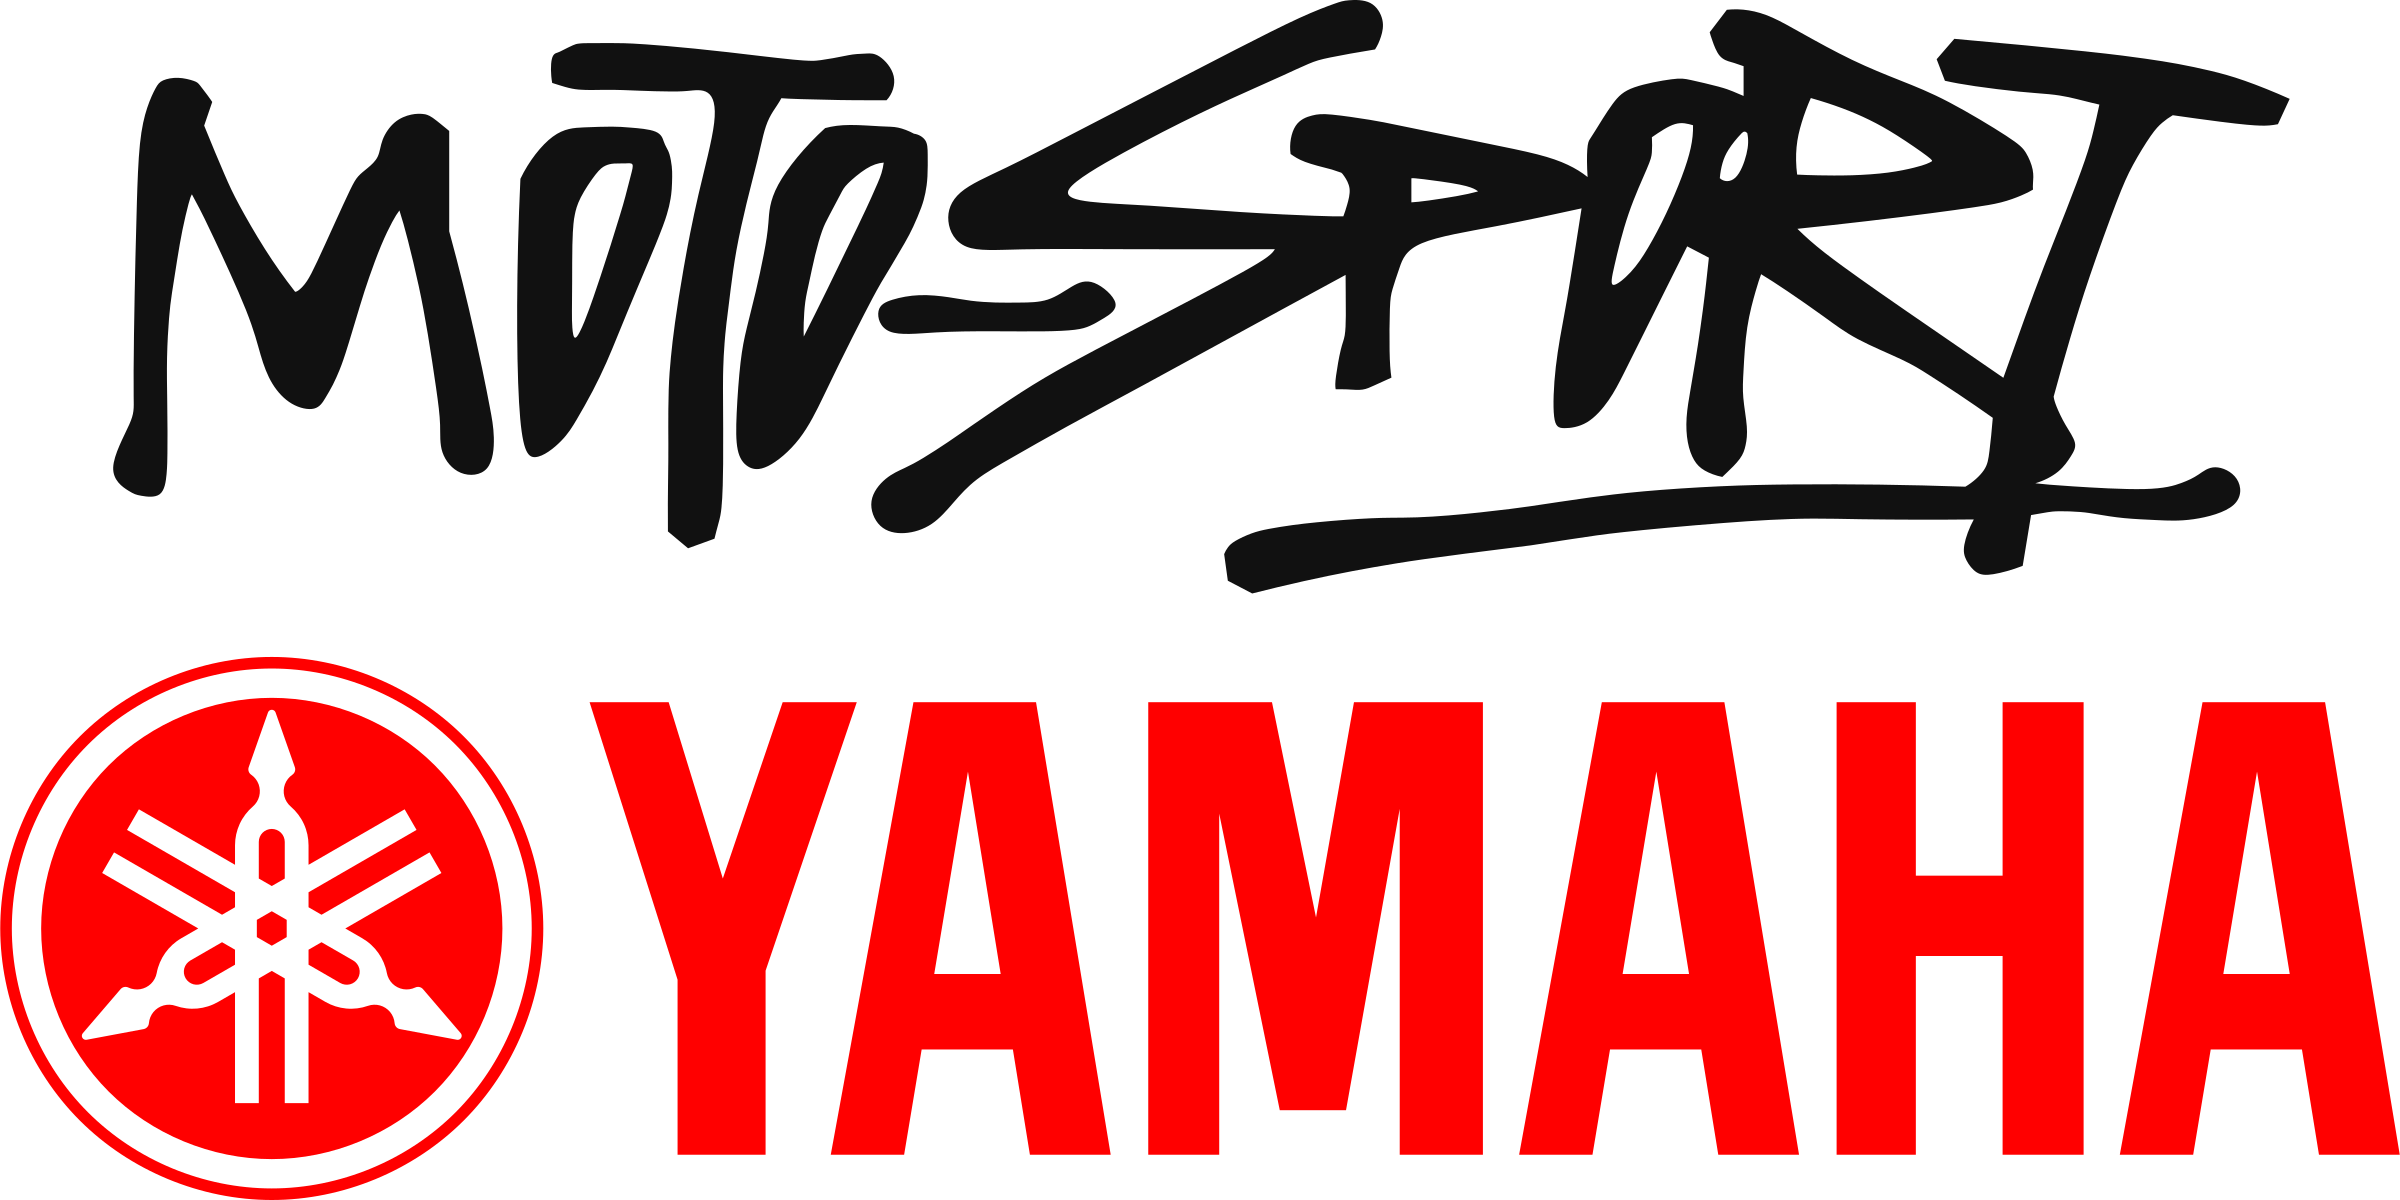 Yamaha Logo, Hd Png Download